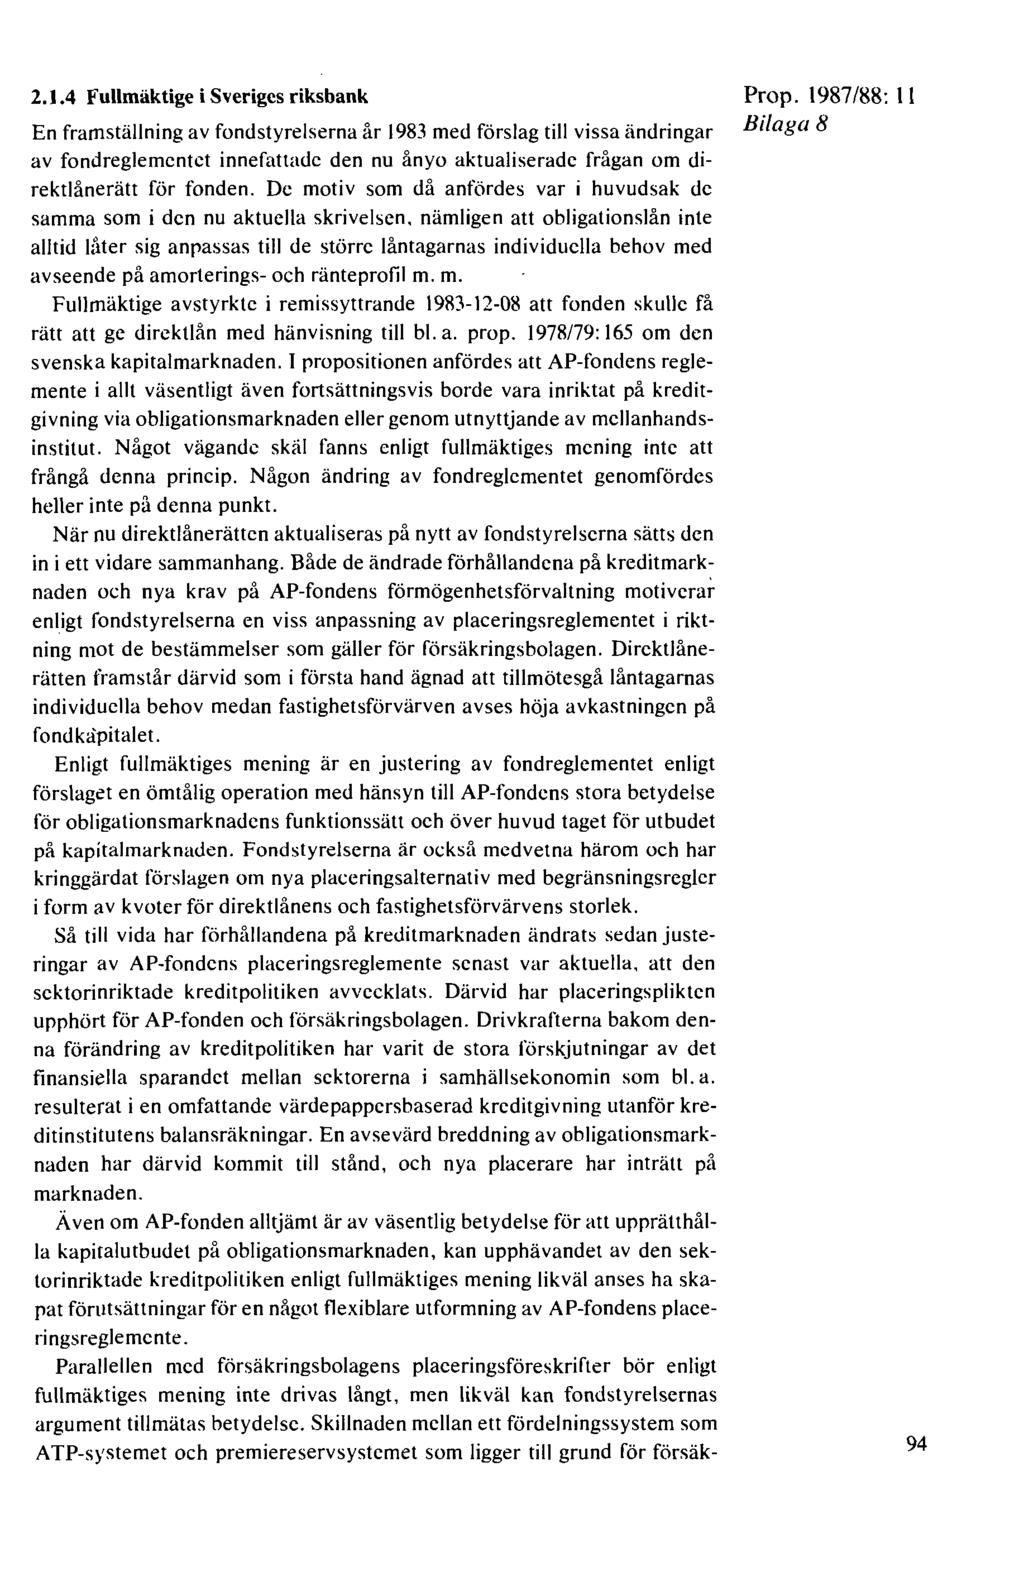 2. J.4 Fullmäktige i Sveriges riksbank En framställning av fondstyrelserna år 1983 med förslag till vissa ändringar av fondreglementet innefattade den nu ånyo aktualiserade frågan om direktlånerätt